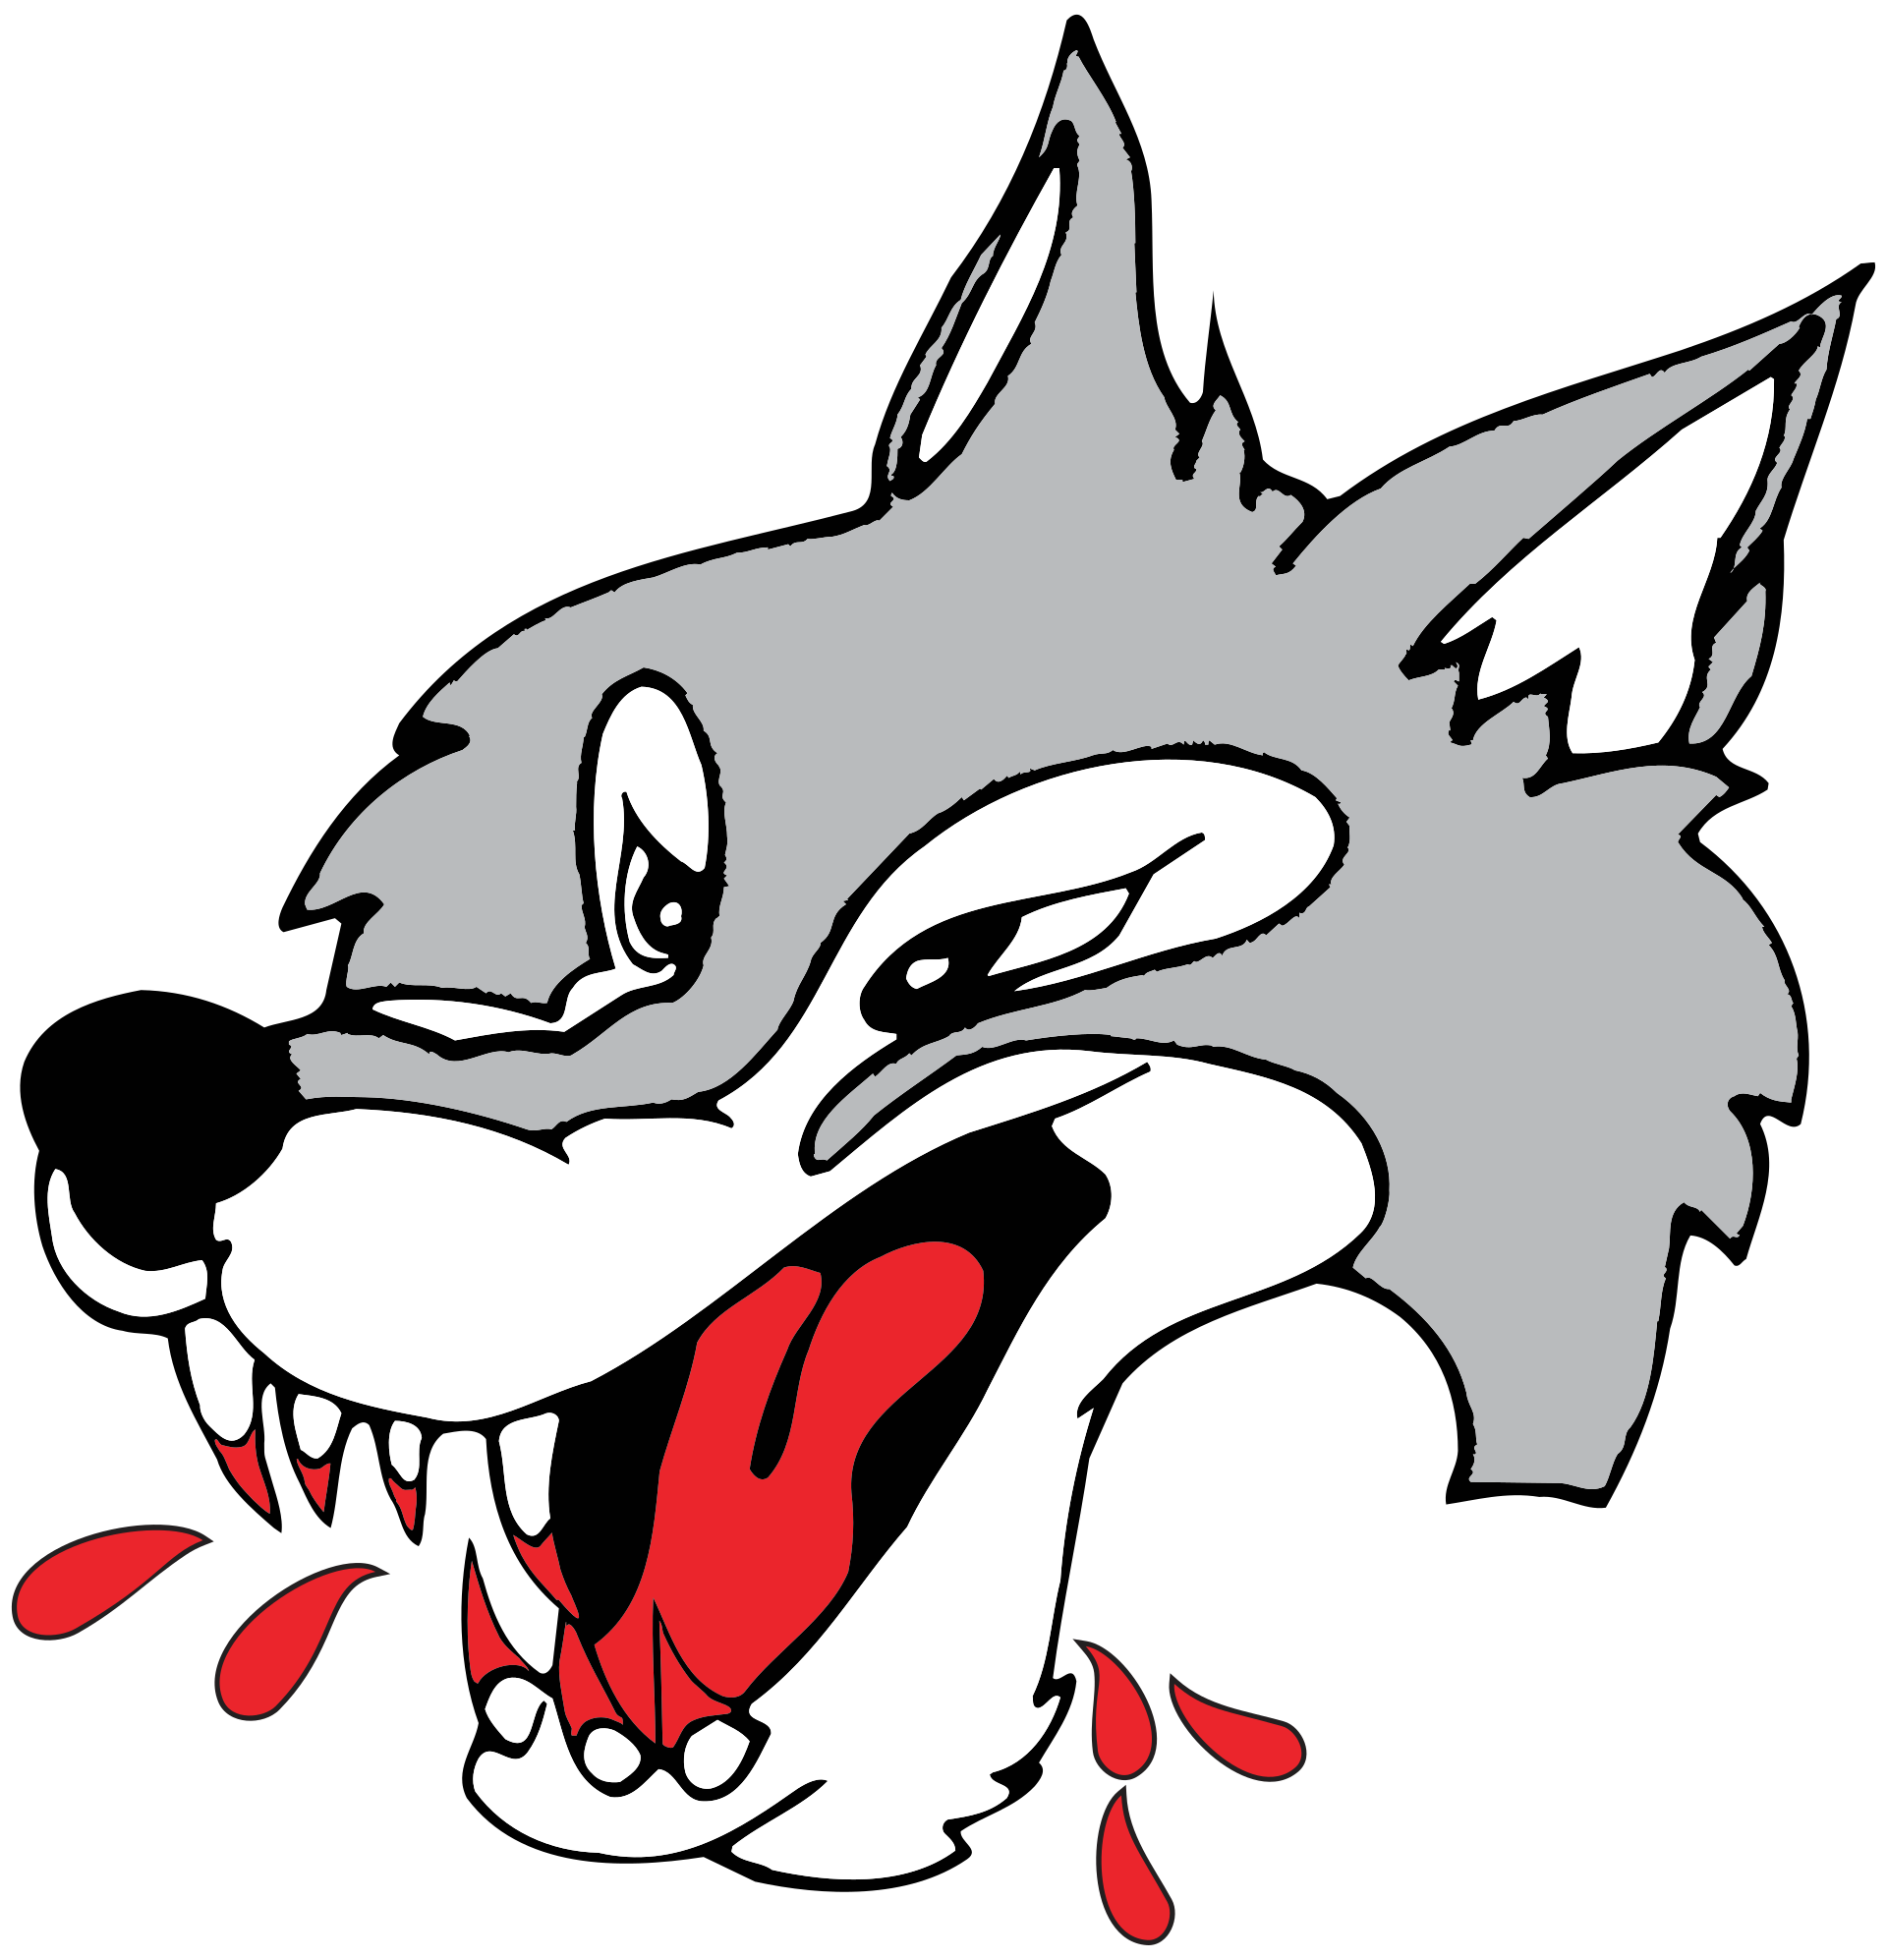 Sudbury Wolves - Wikipedia